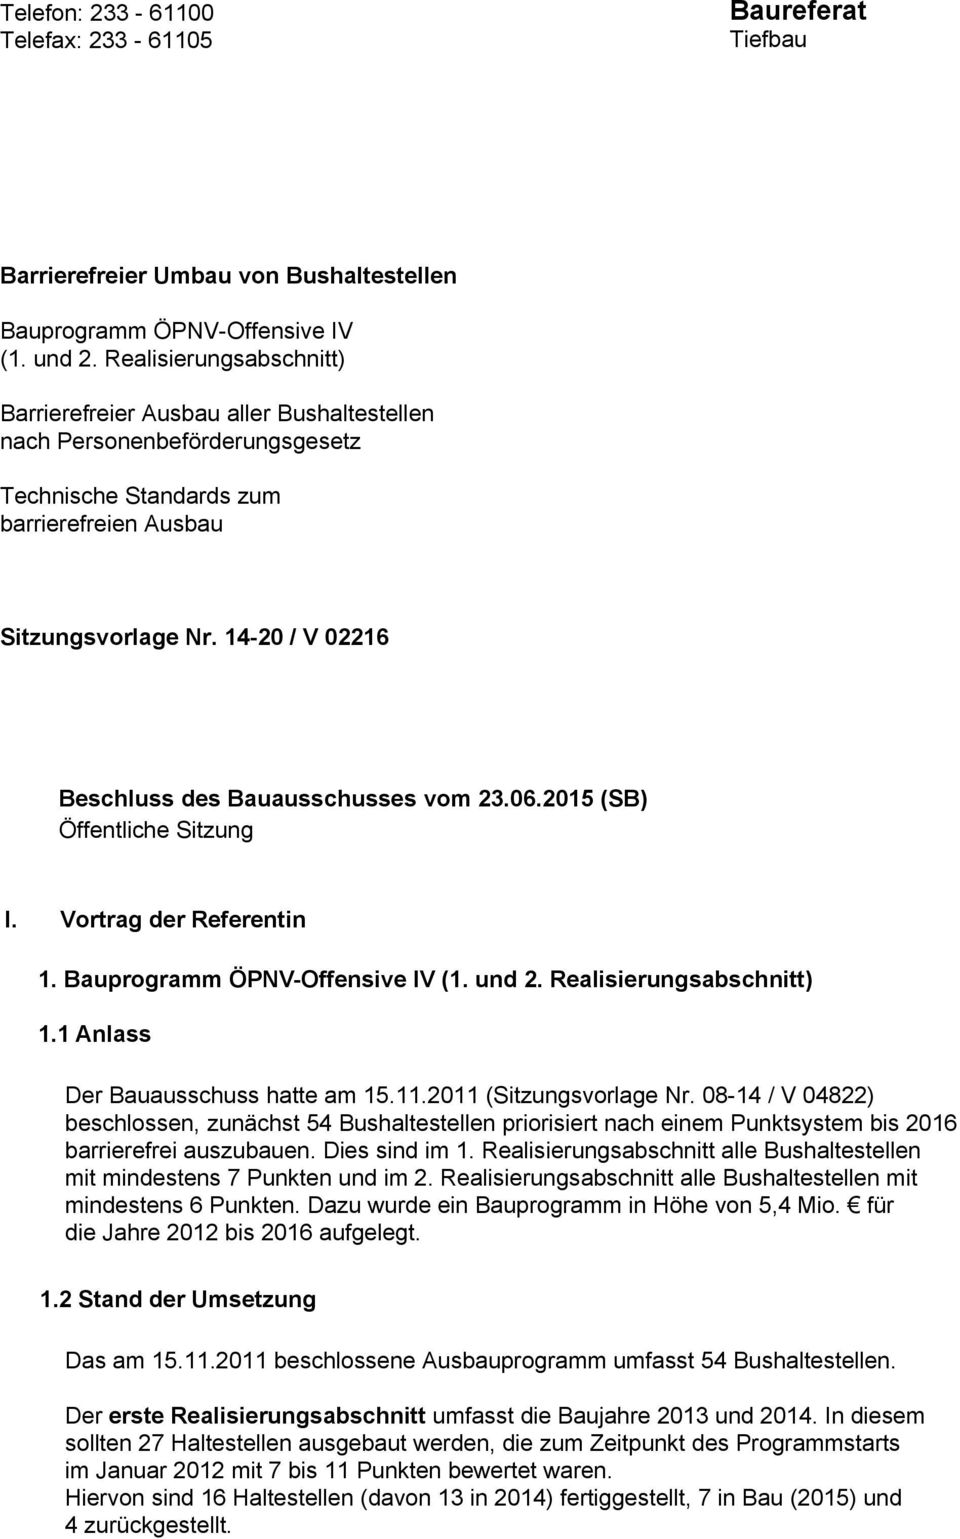 14-20 / V 02216 Beschluss des Bauausschusses vom 23.06.2015 (SB) Öffentliche Sitzung I. Vortrag der Referentin 1. Bauprogramm ÖPNV-Offensive IV (1. und 2. Realisierungsabschnitt) 1.